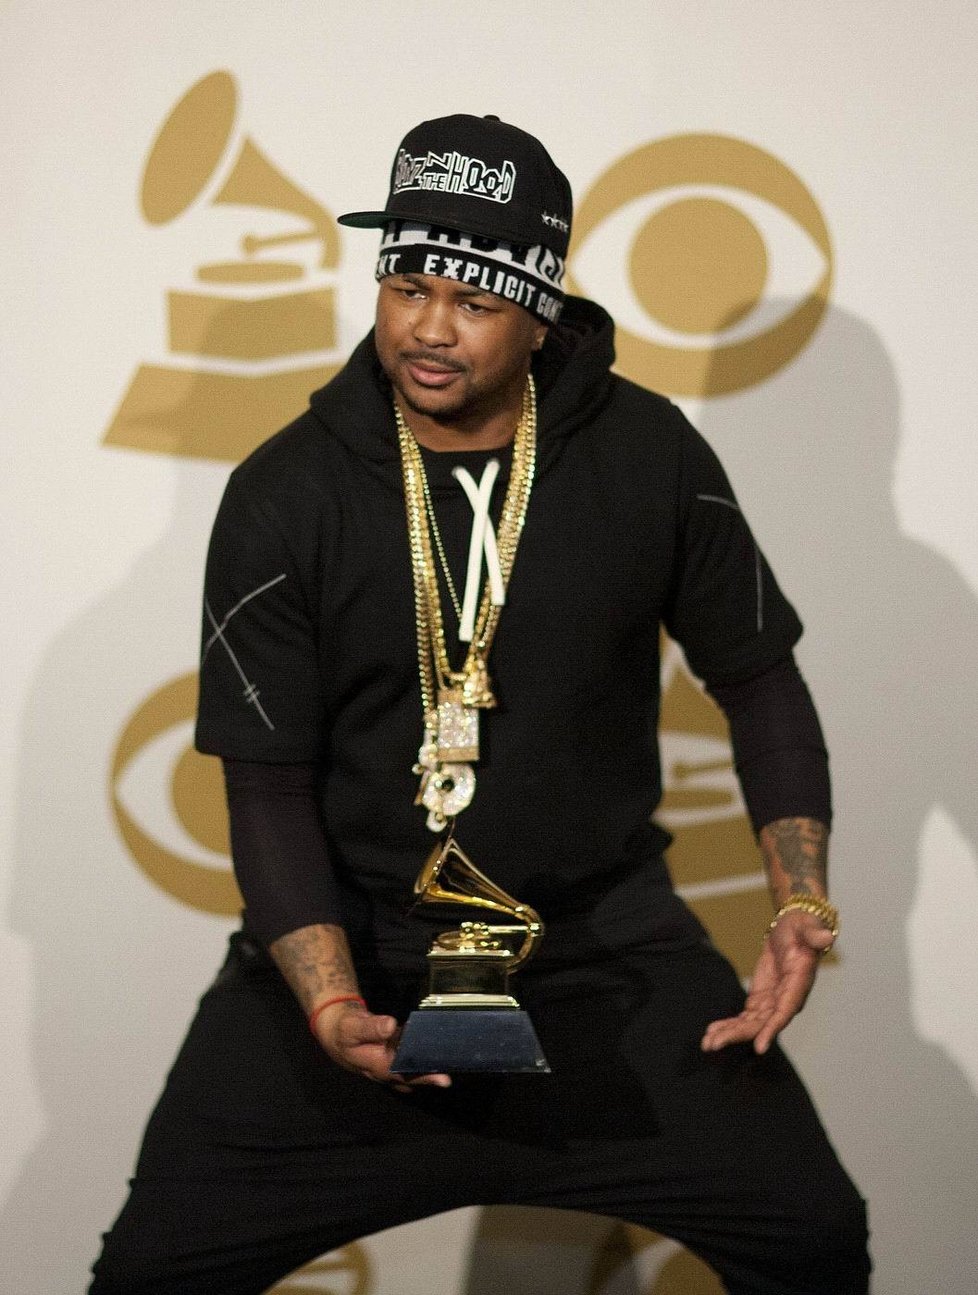 The-Dream získal ocenění Grammy za nejlepší rap vystoupení s písní Church In The Wild